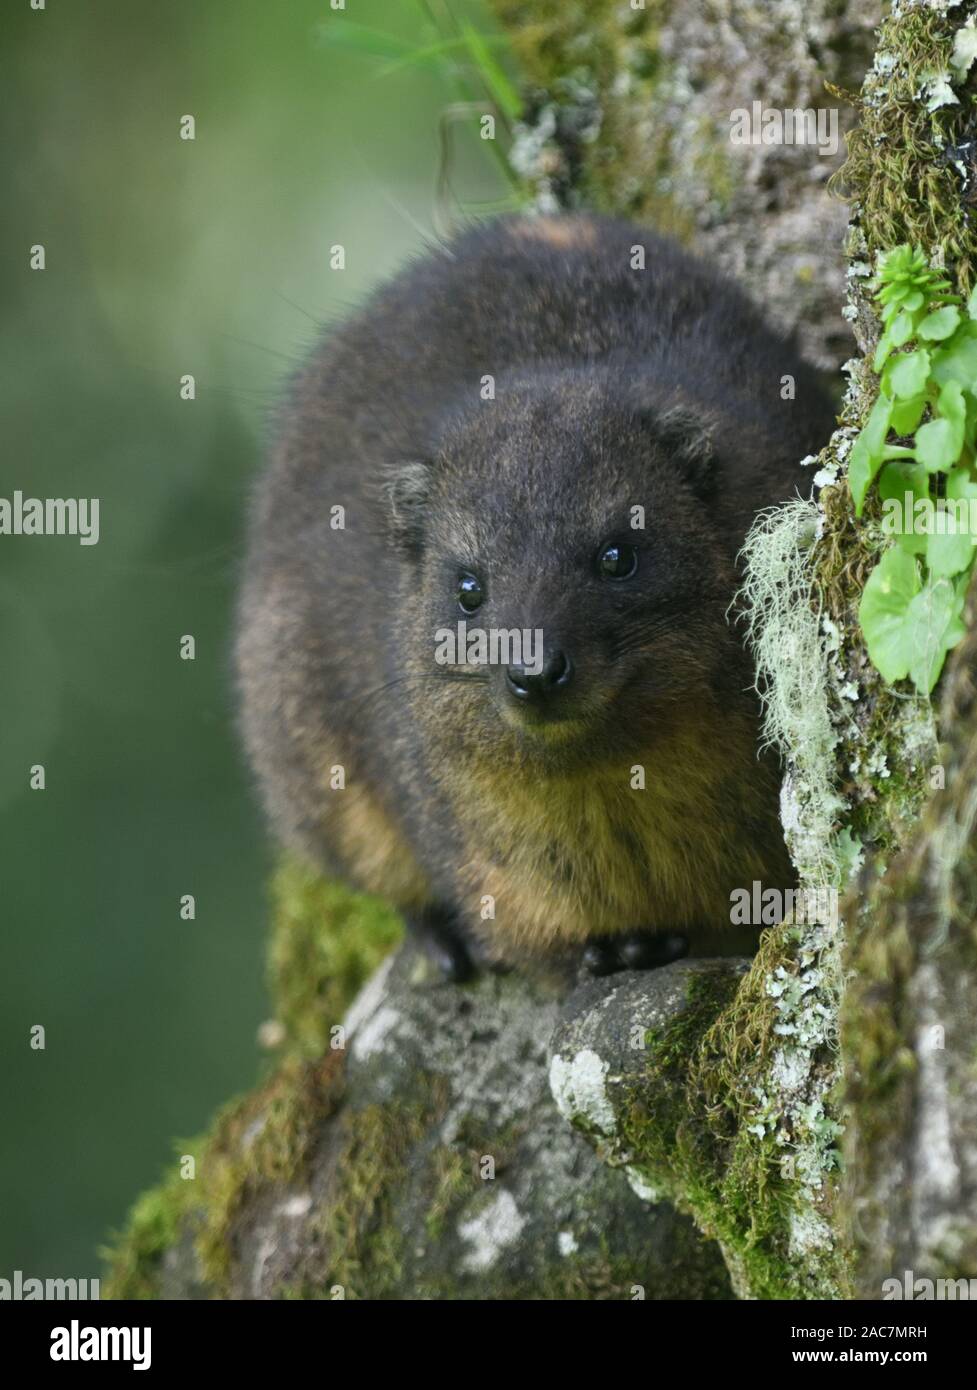 Eine südliche Tree hyrax oder Baum dassie (Dendrohyrax Arboreus) befindet sich außen ein Loch in einem Baum im feuchten Bergwälder an den Hängen des Kilimanjaro. Kil Stockfoto